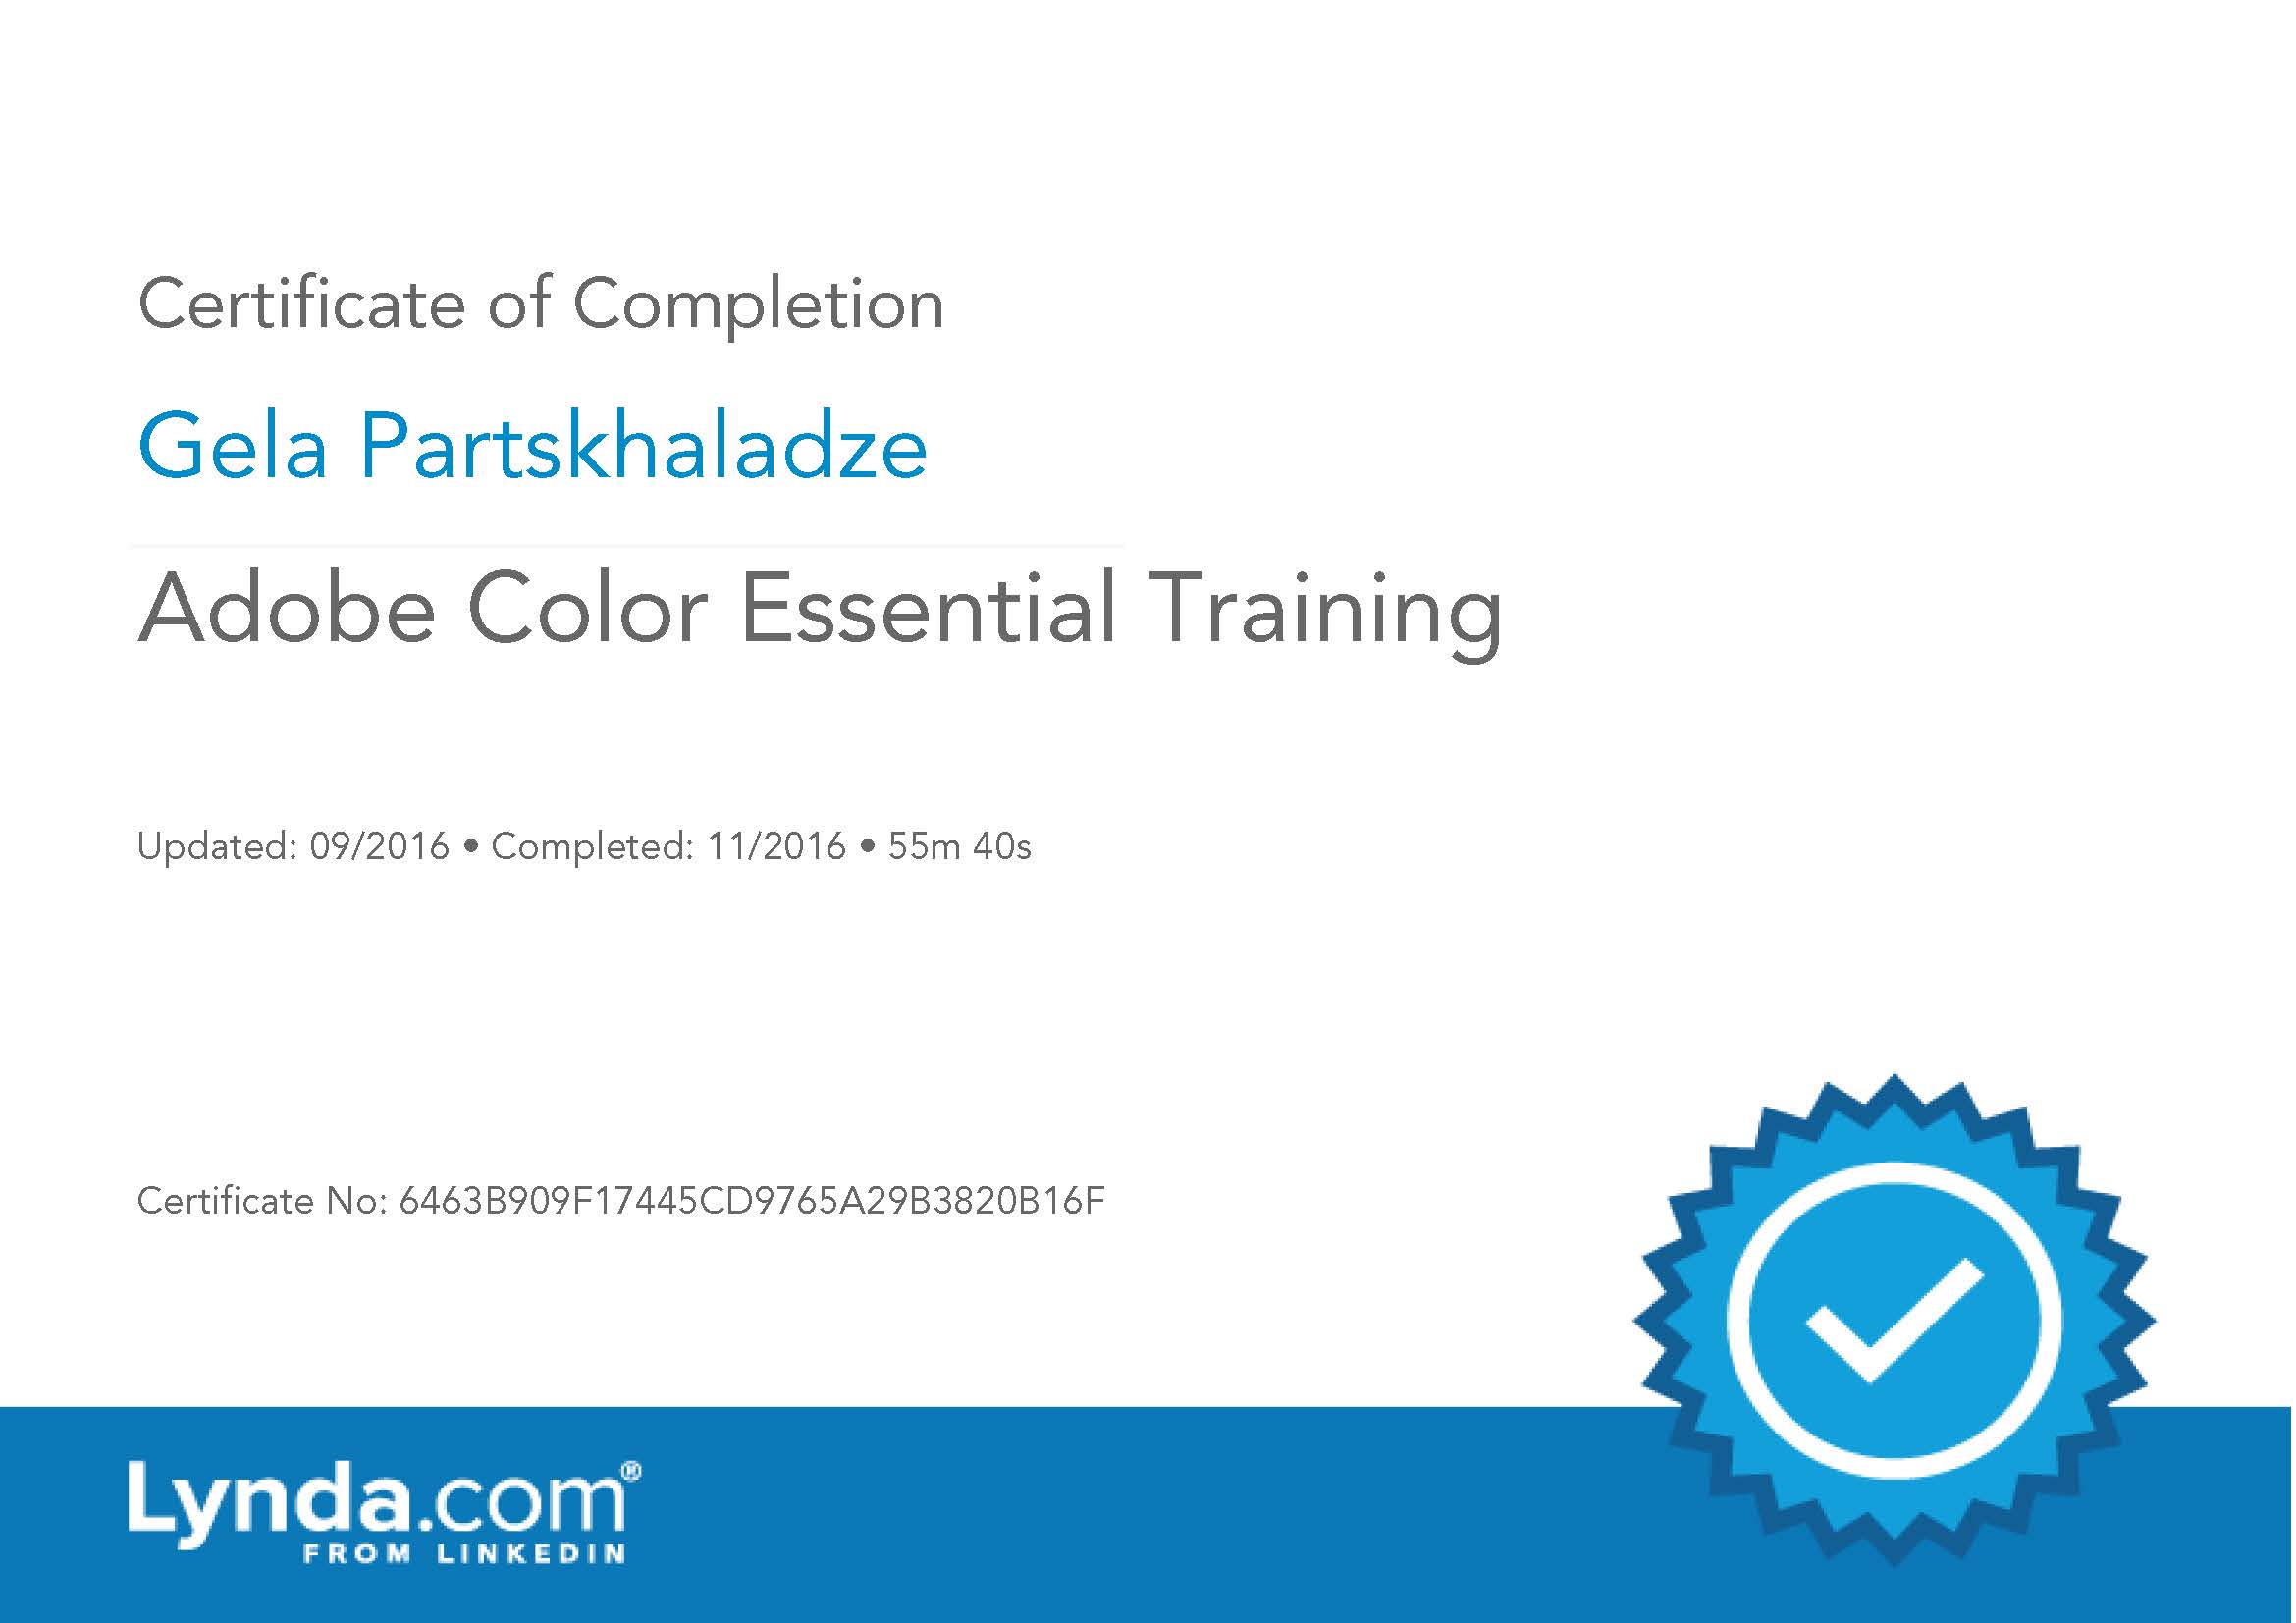 Adobe Color Essential Training